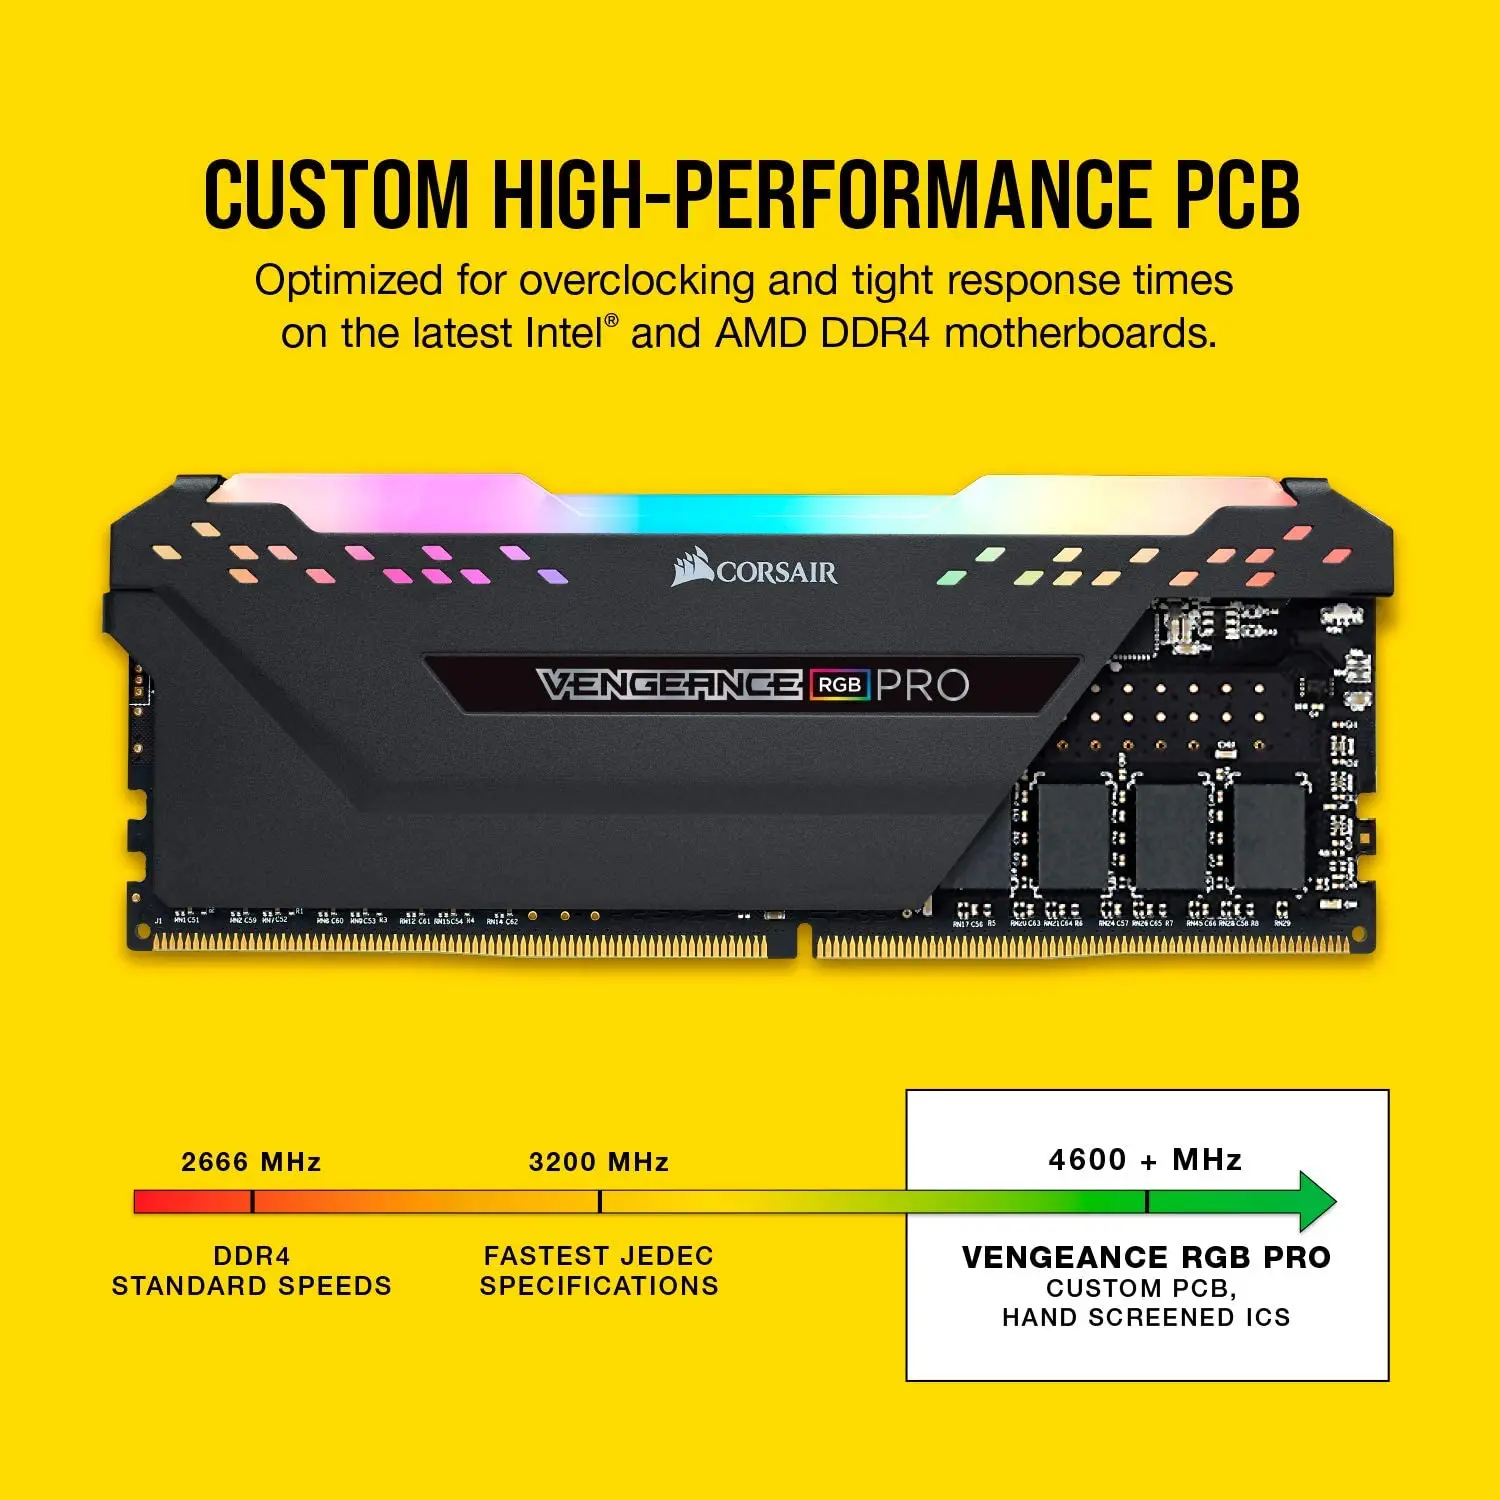 コルセア VENGEANCE RGB PRO DDR4-2666MHz 16GB